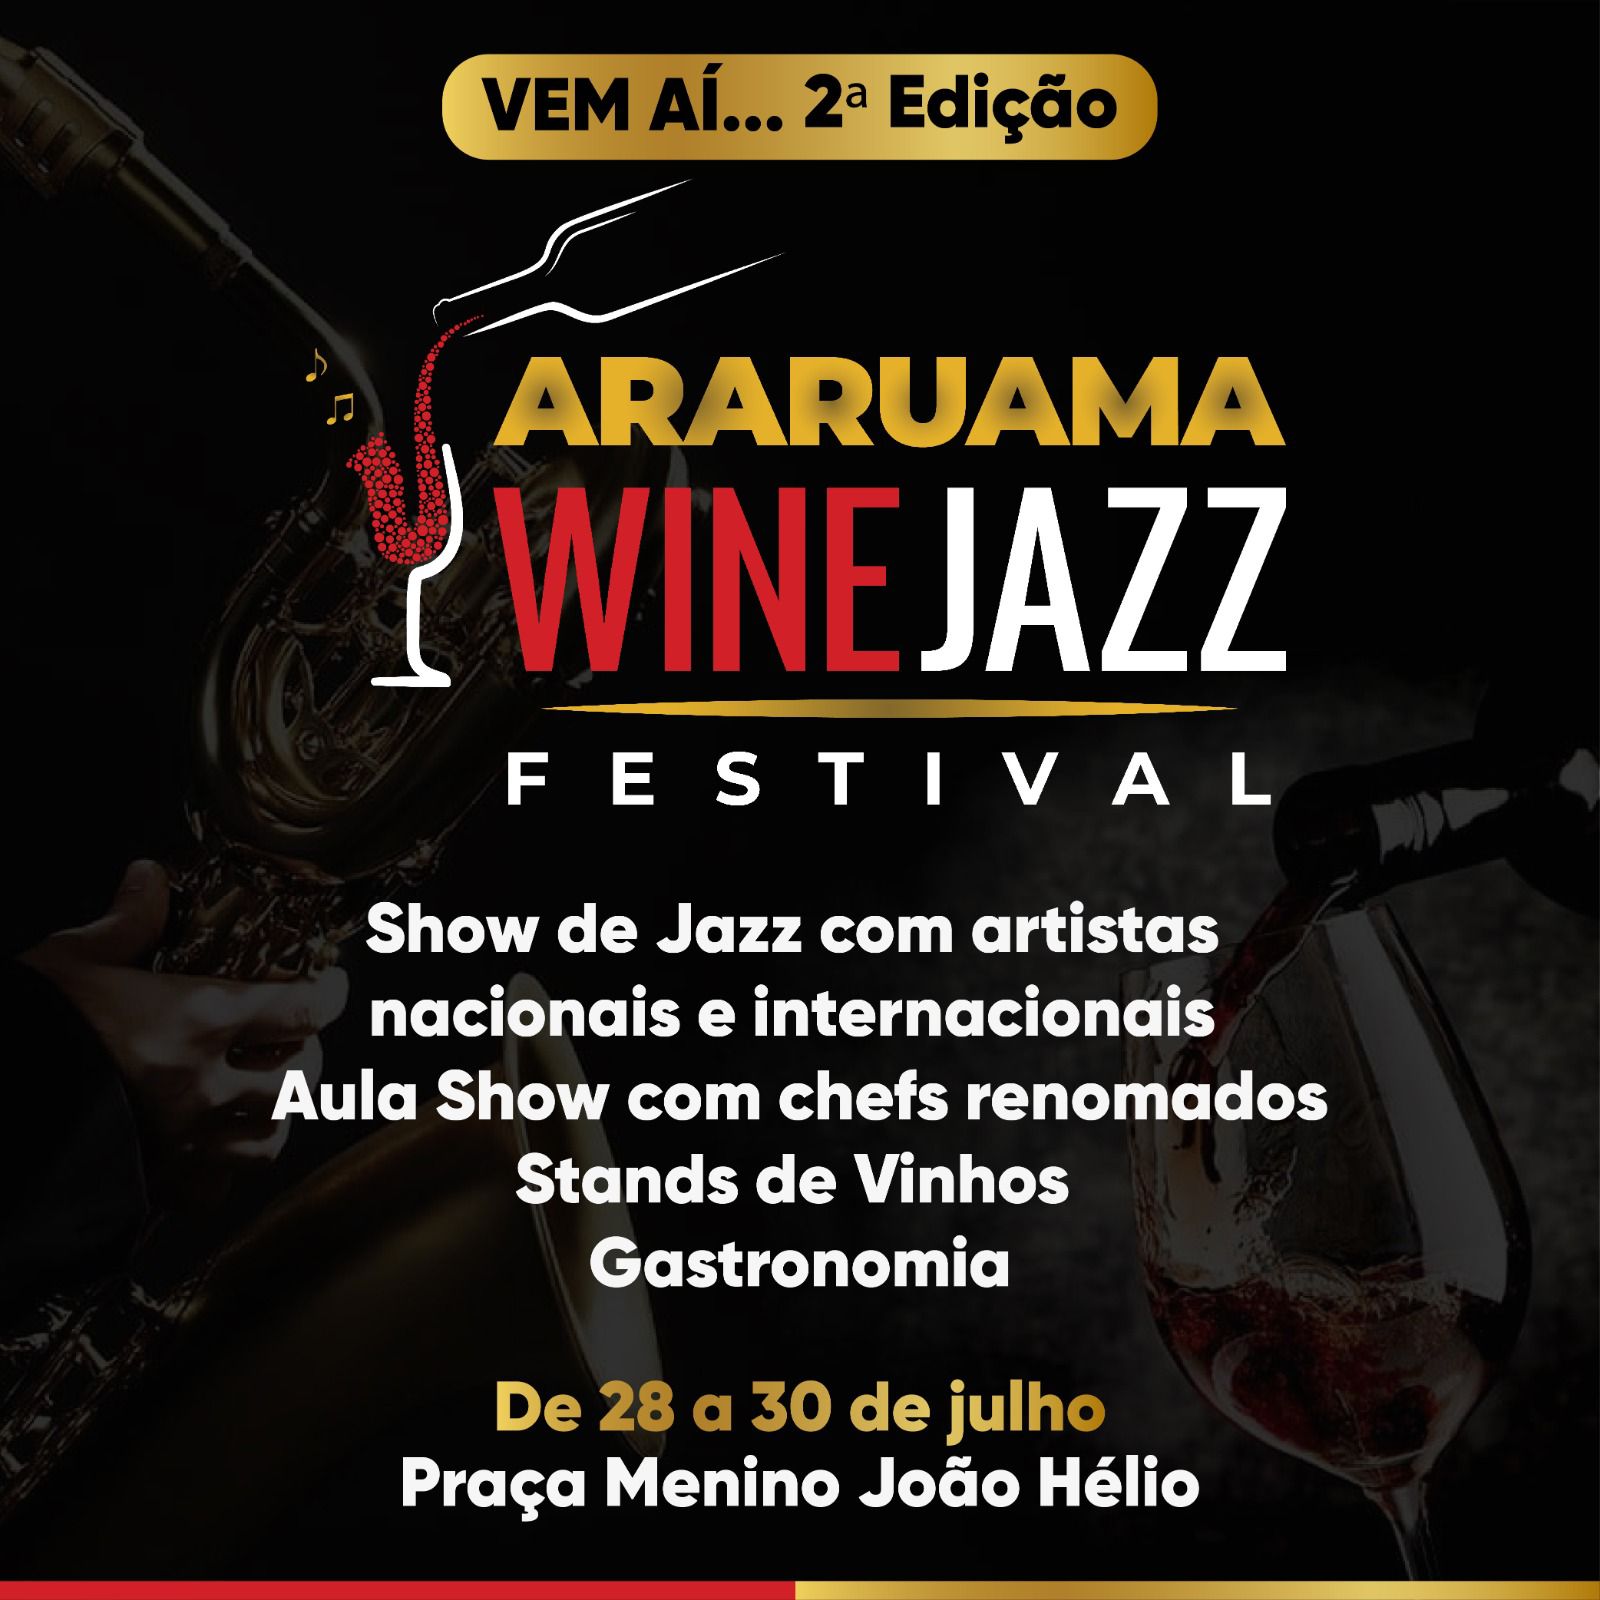 A 2ª edição do Araruama Wine Jazz Festival vai reunir muita música com artistas nacionais e internacionais, vinhos e gastronomia, durante três dias de festa